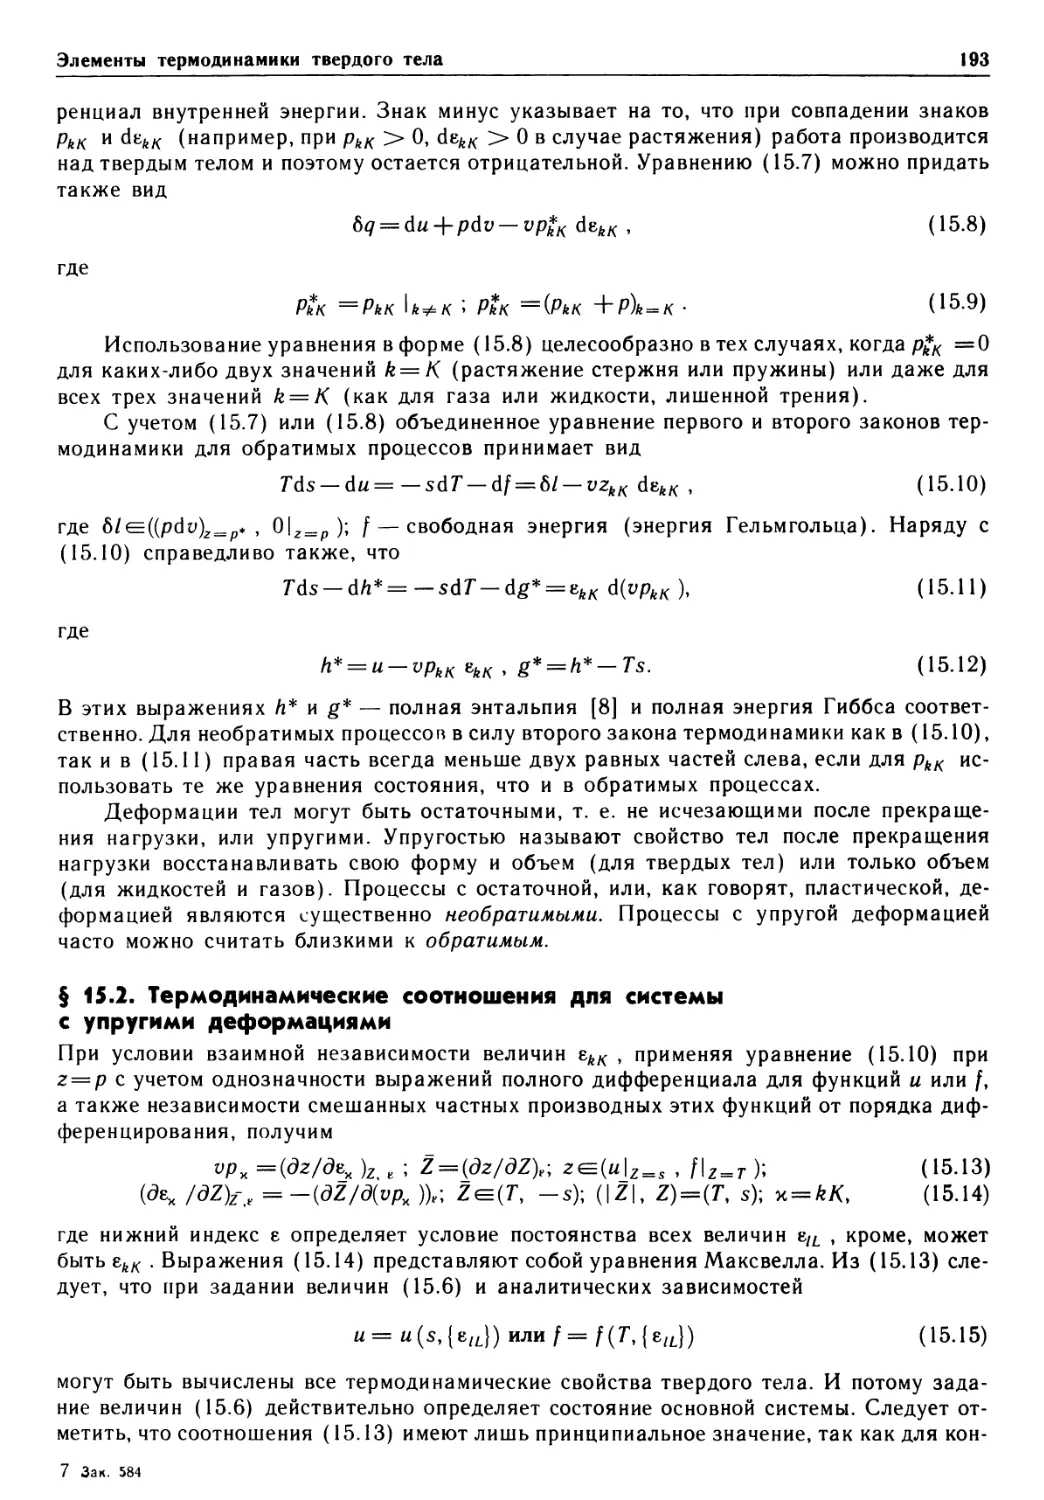 § 15.2. Термодинамические соотношения для системы с упругими деформациями